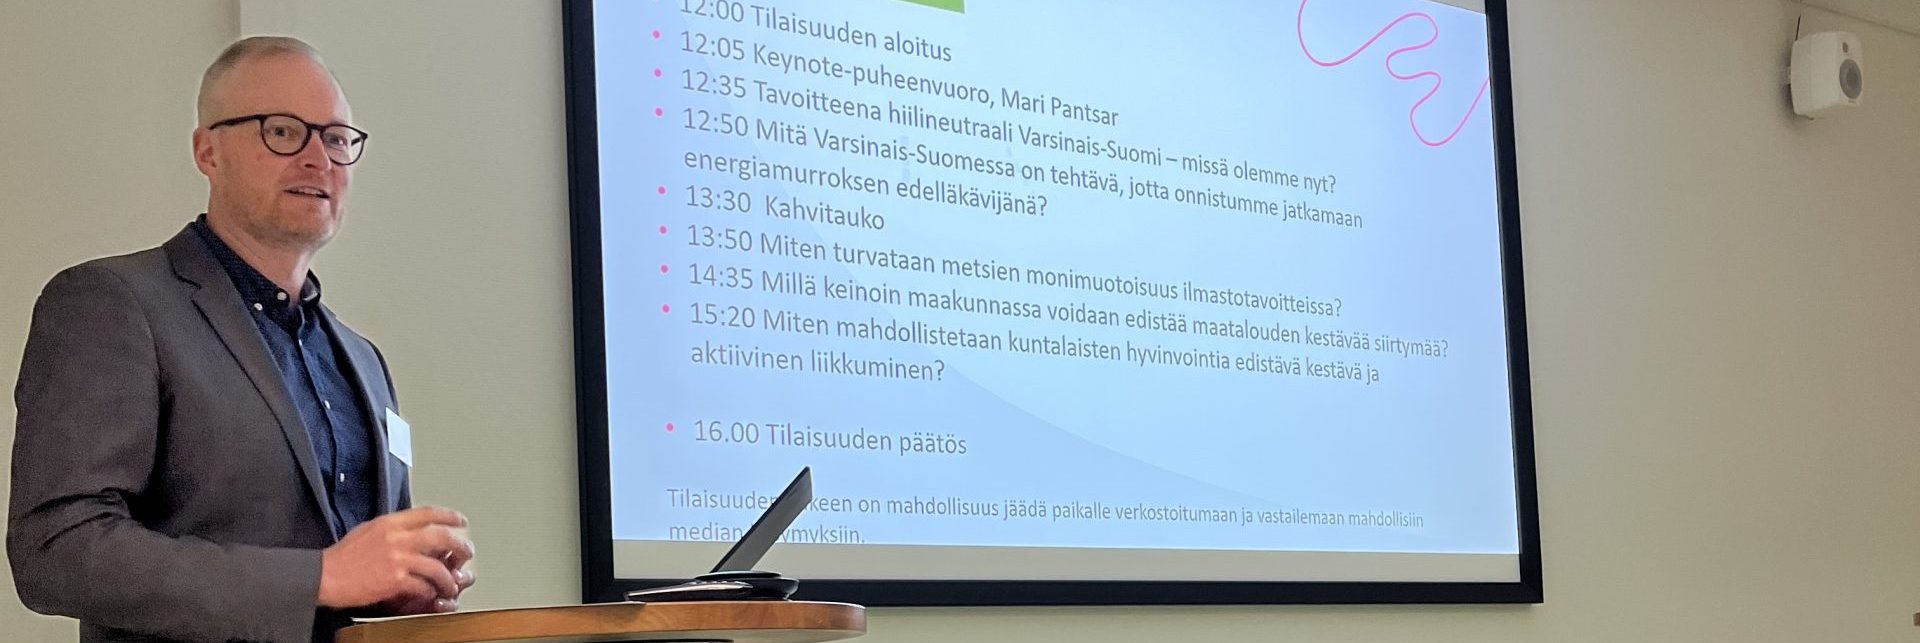 Pekka Salminen esiintymässä seminaarissa.